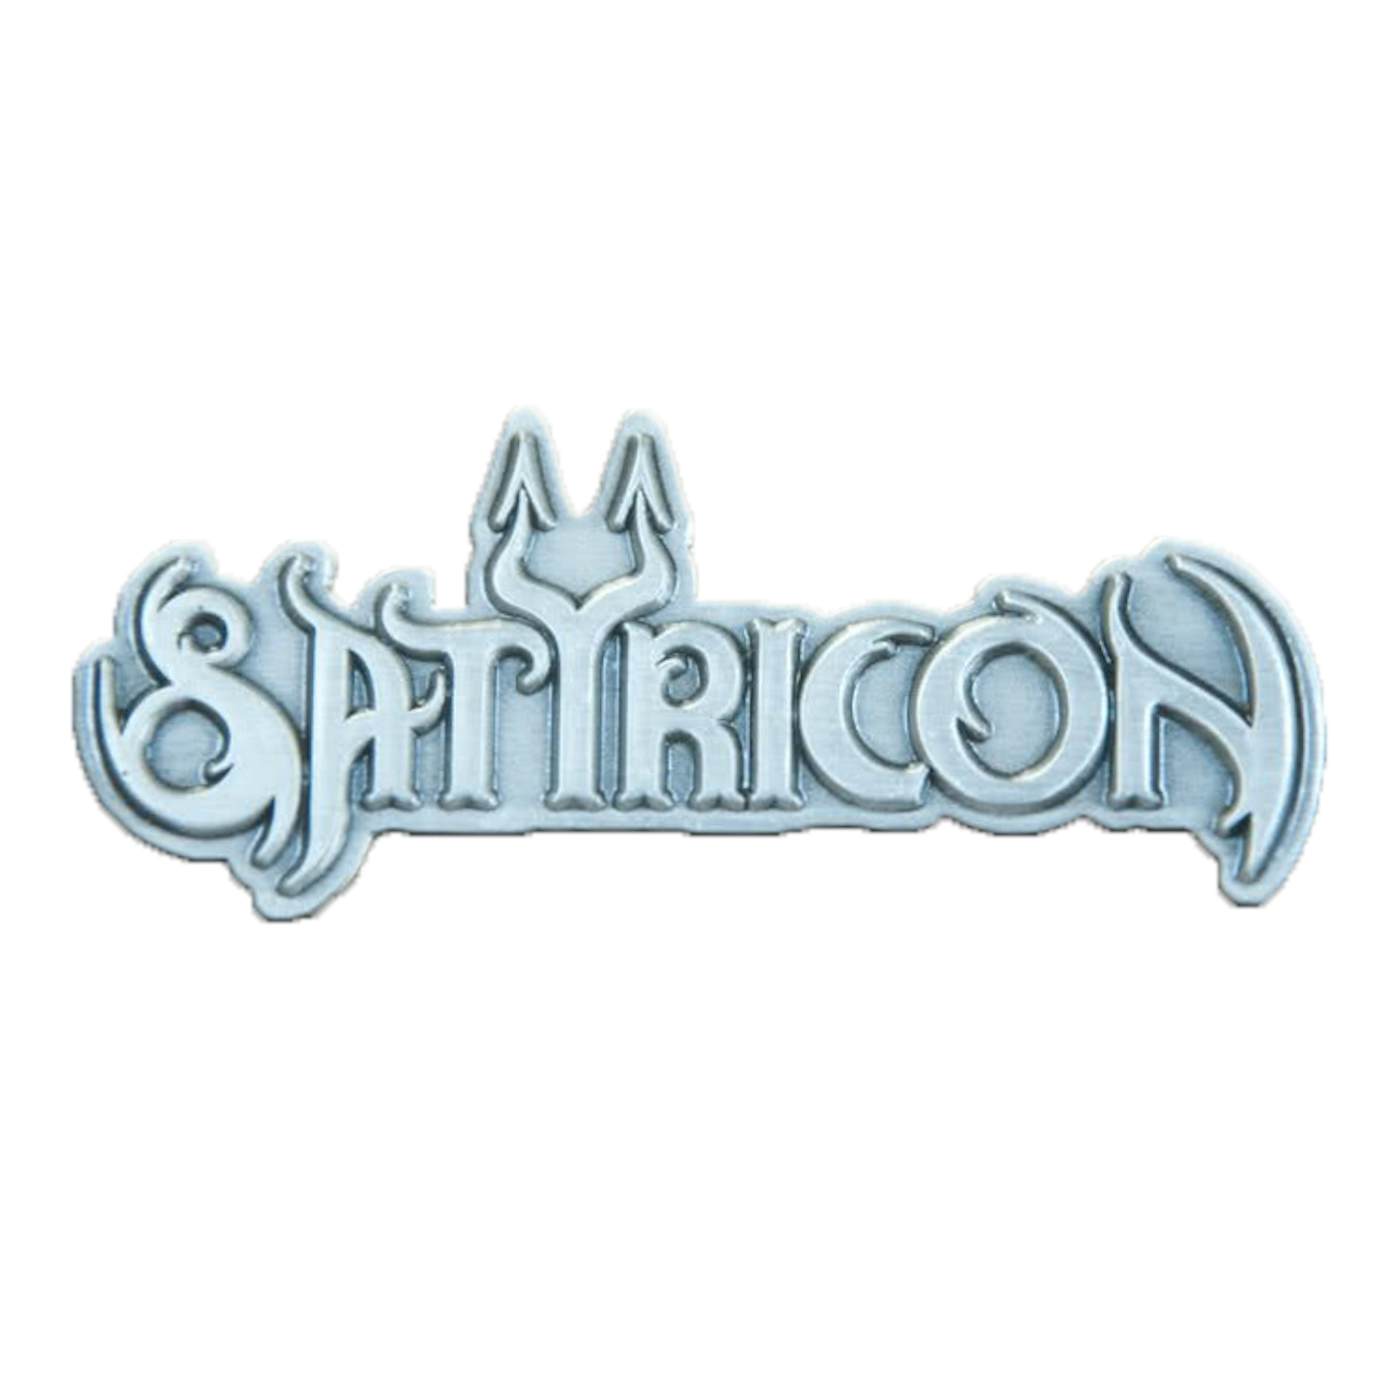 SATYRICON - 'Logo' Metal Pin